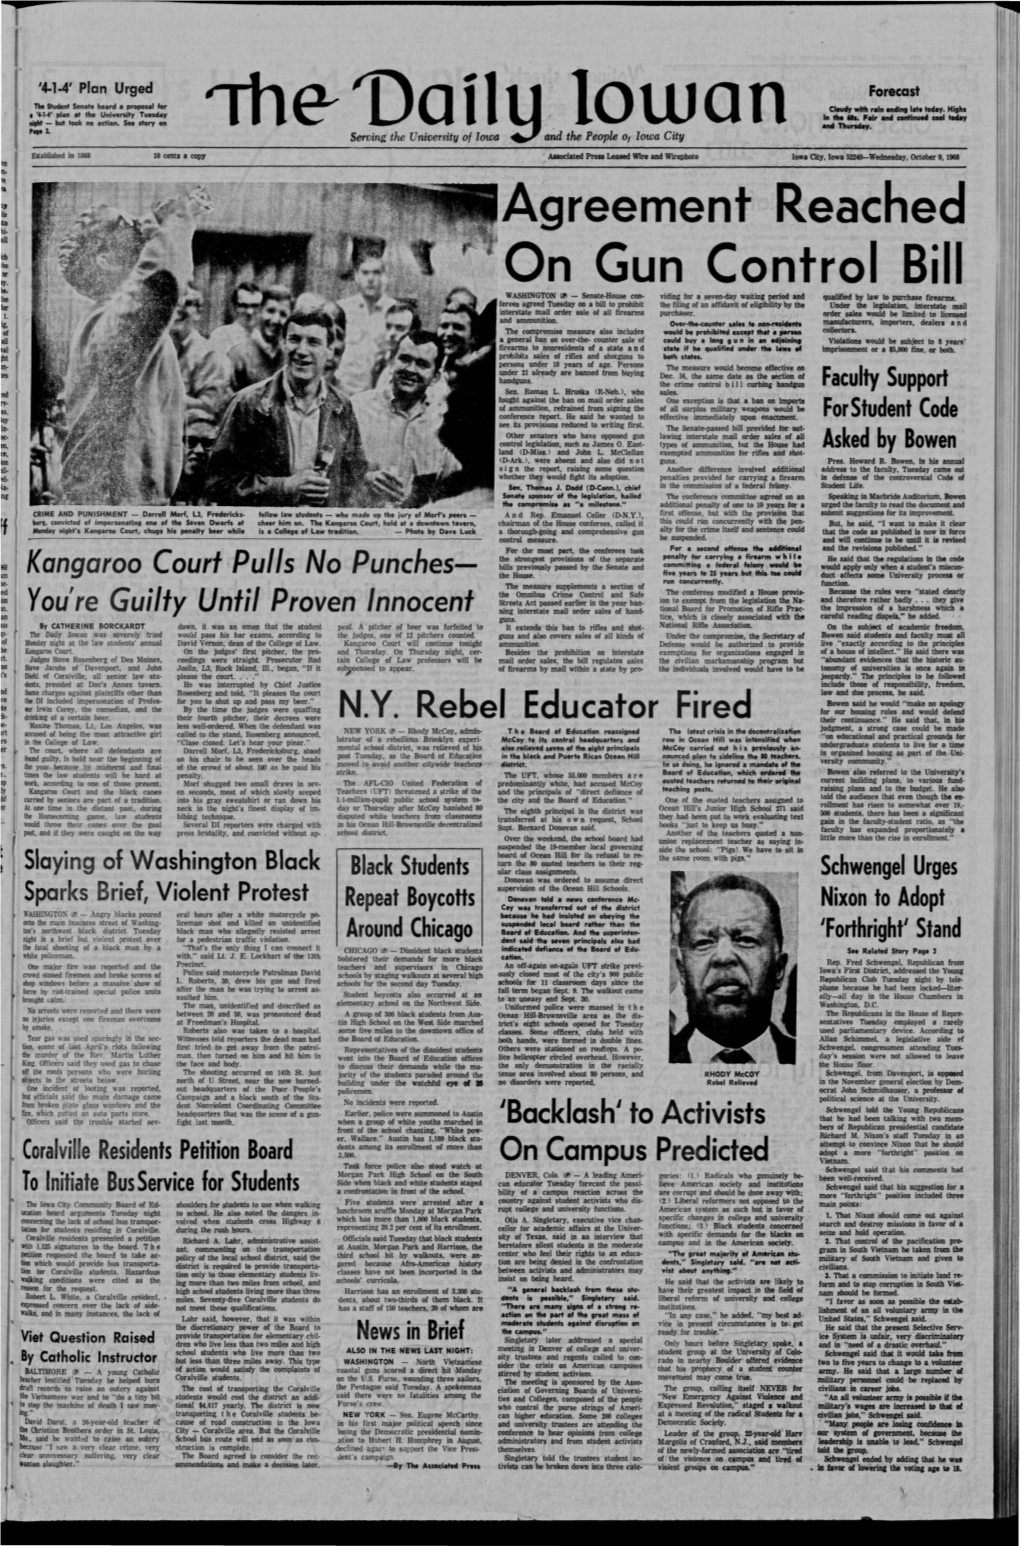 Daily Iowan (Iowa City, Iowa), 1968-10-09